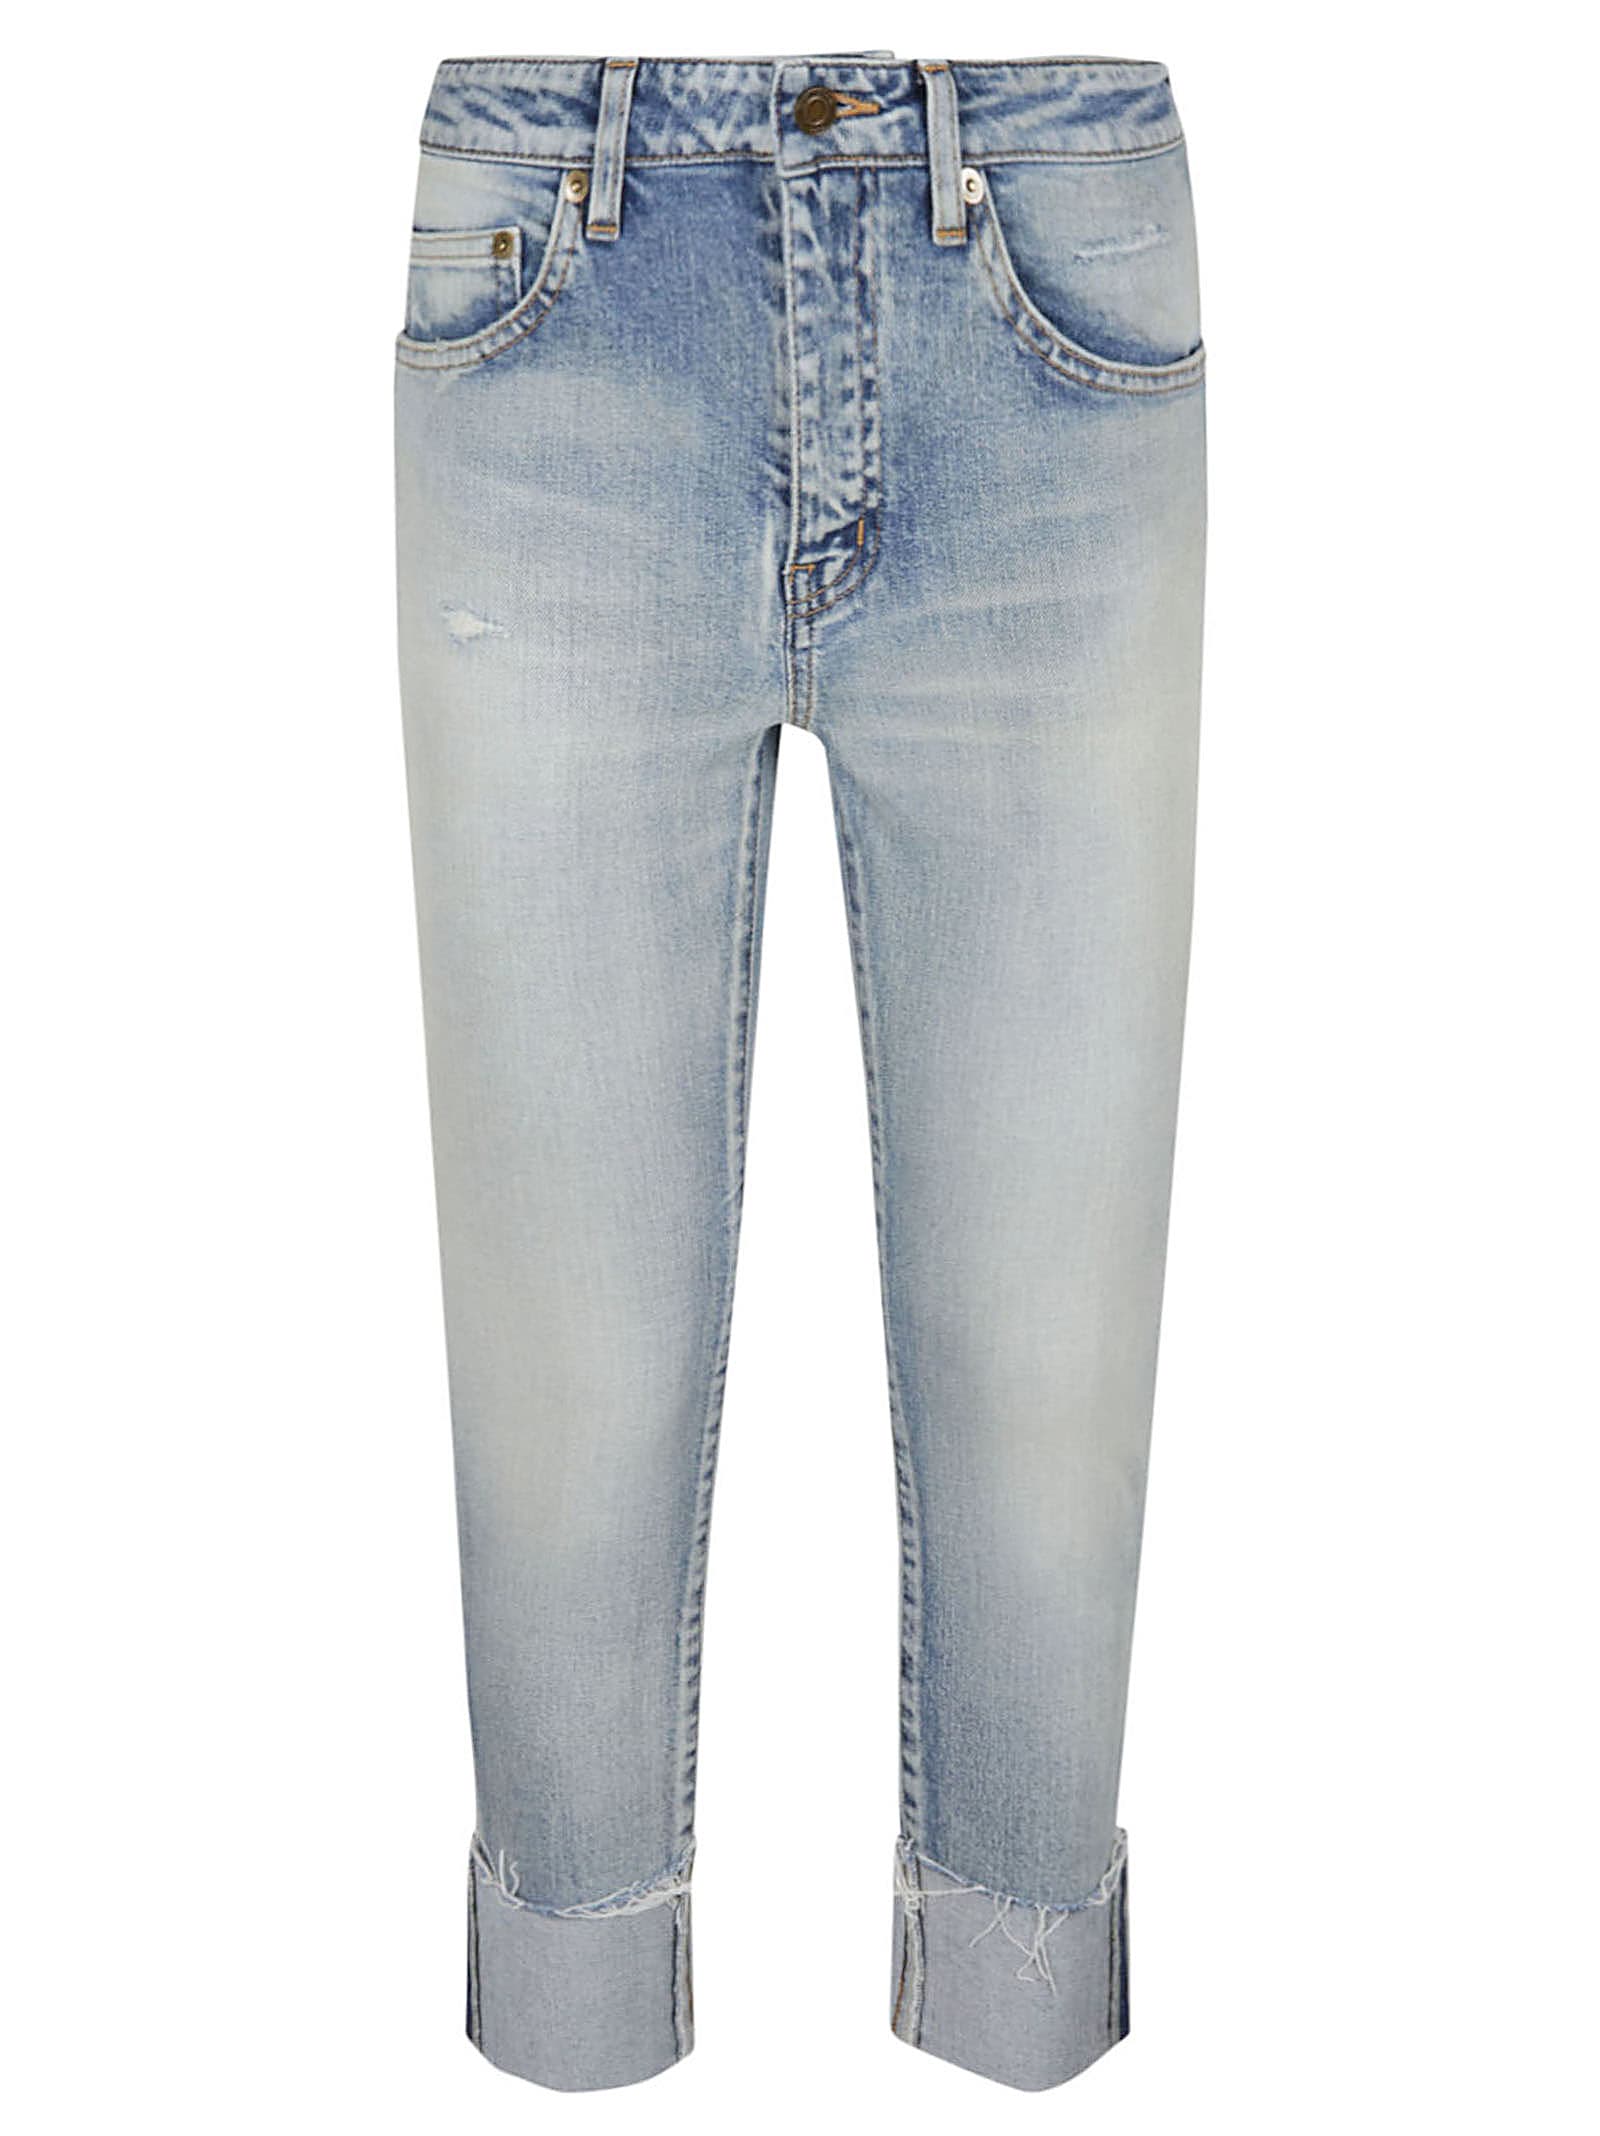 Saint Laurent Skinny Medium Waist Jeans